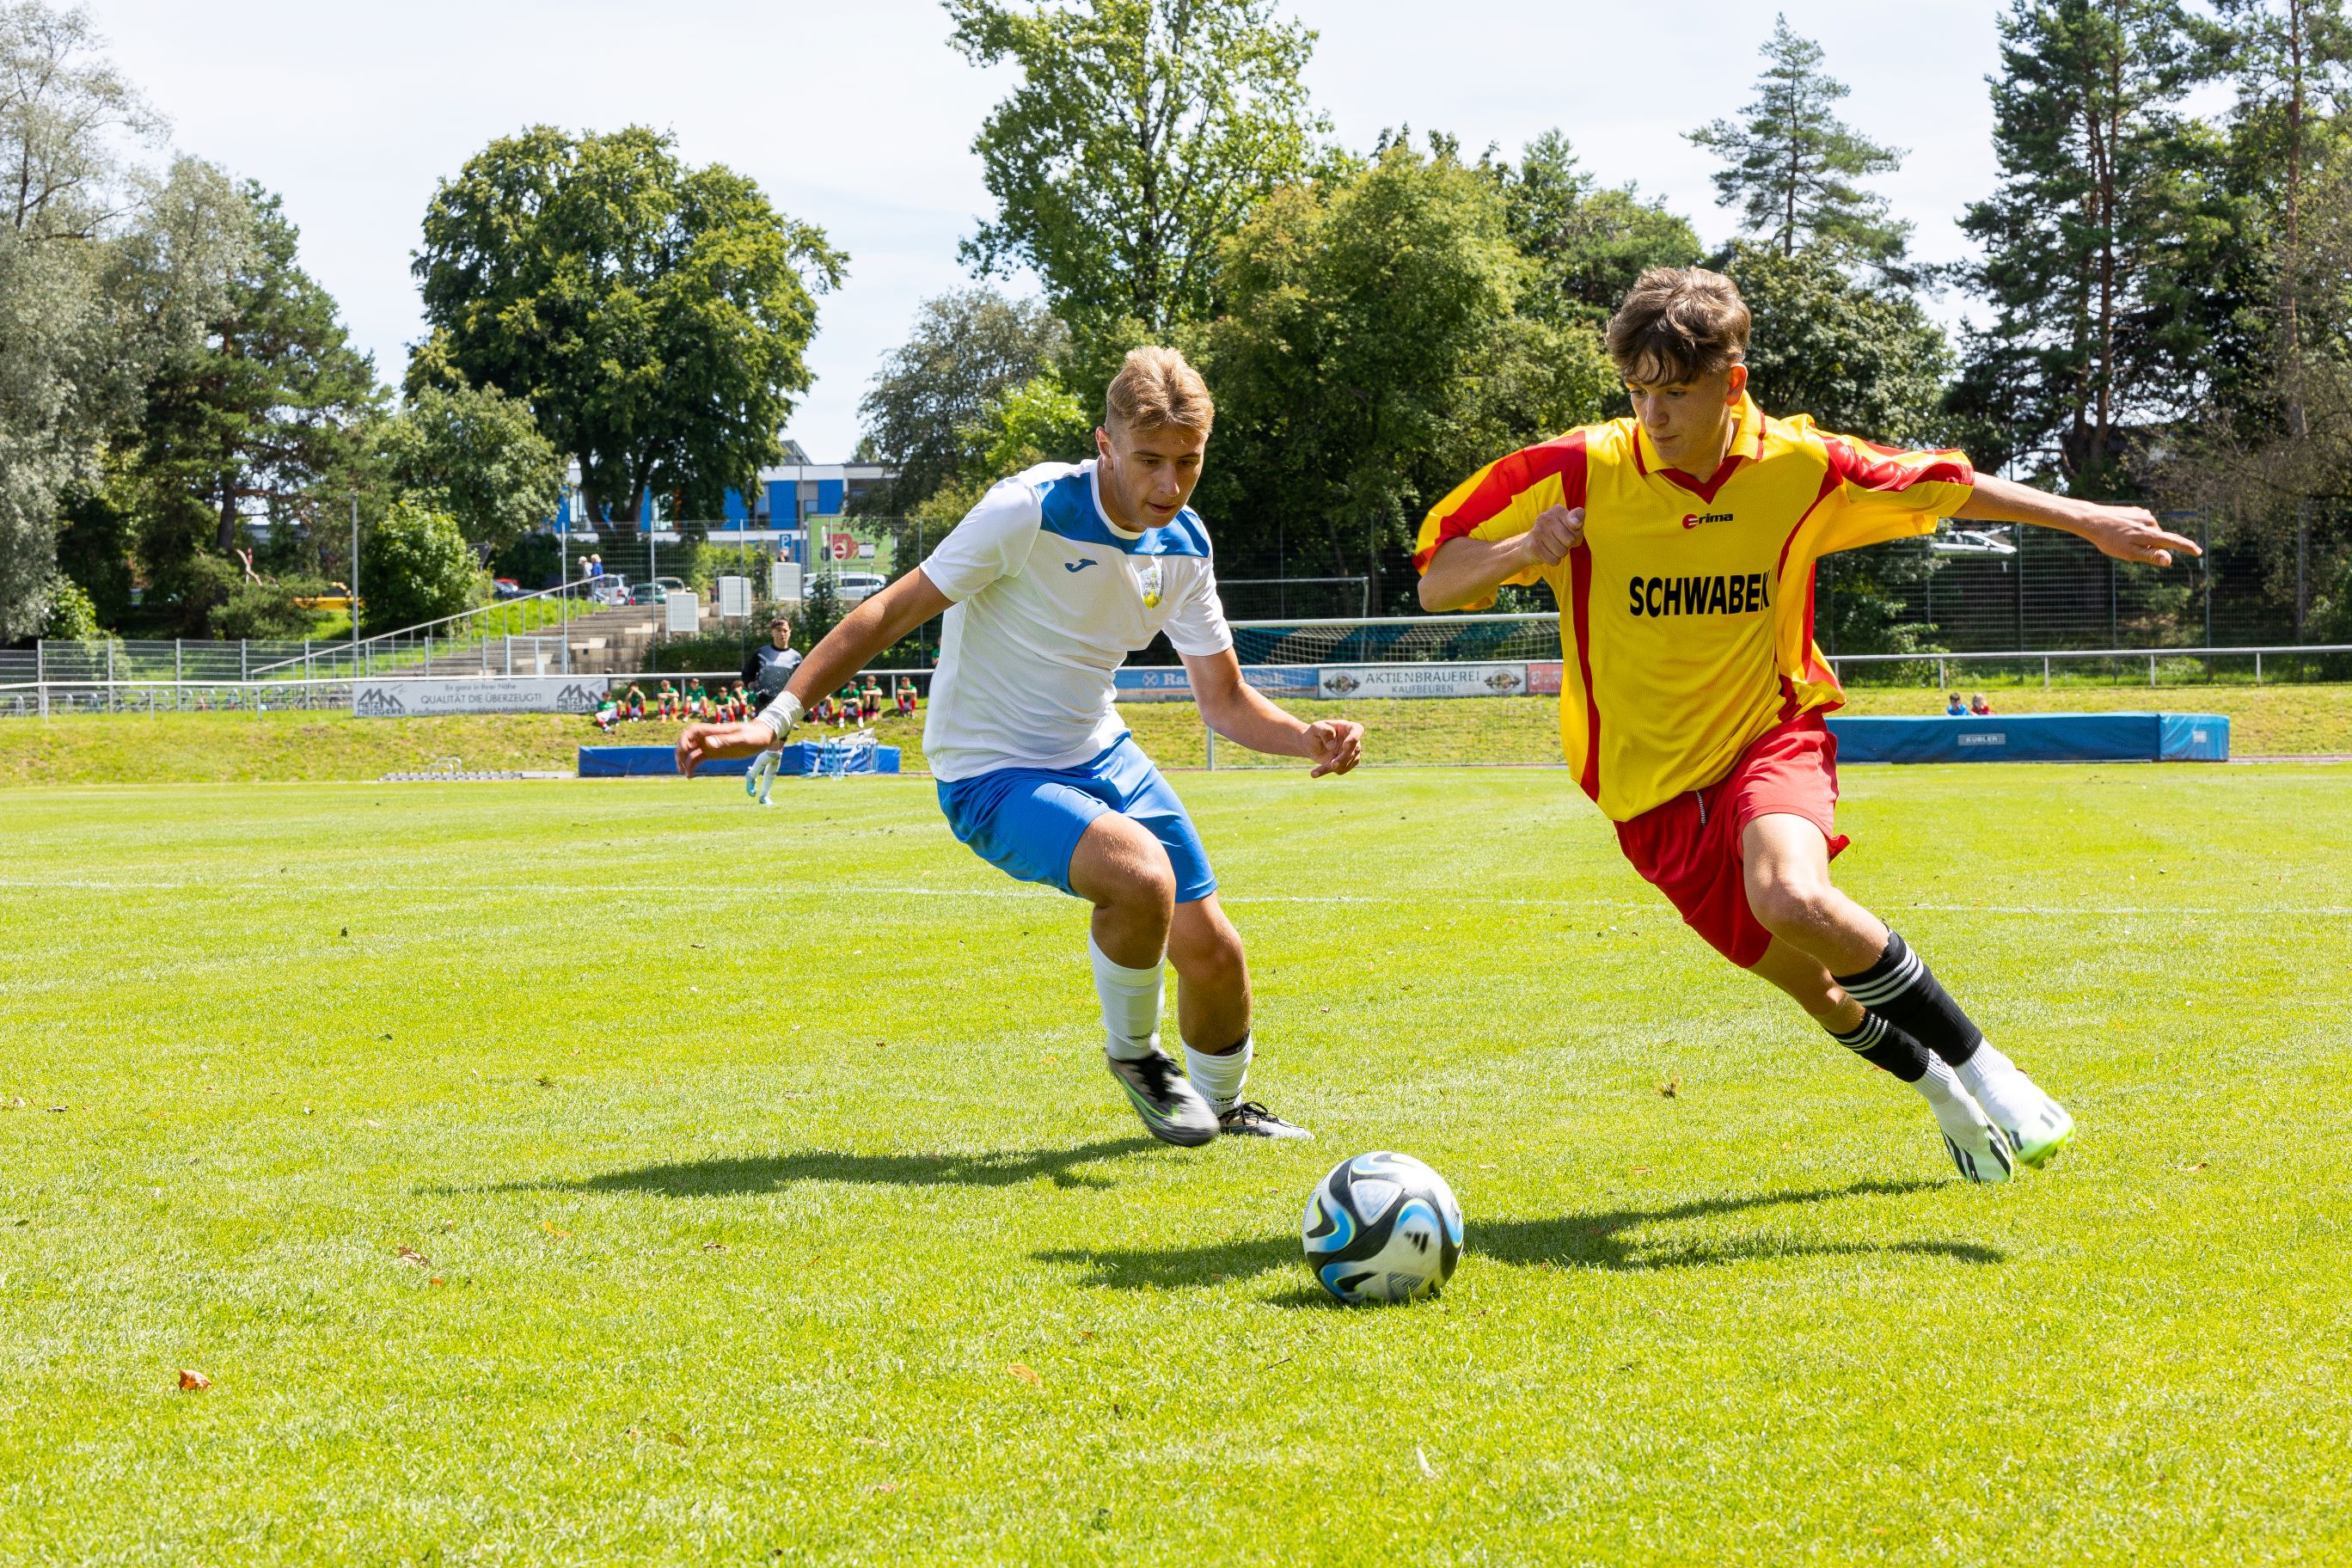 Unter dem Titel „Vier Regionen für Europa“ organisiert der Bezirk Schwaben seit 2002 das U16-Jugendfußballturnier mit seinen drei Partnerregionen: der Mayenne (Frankre